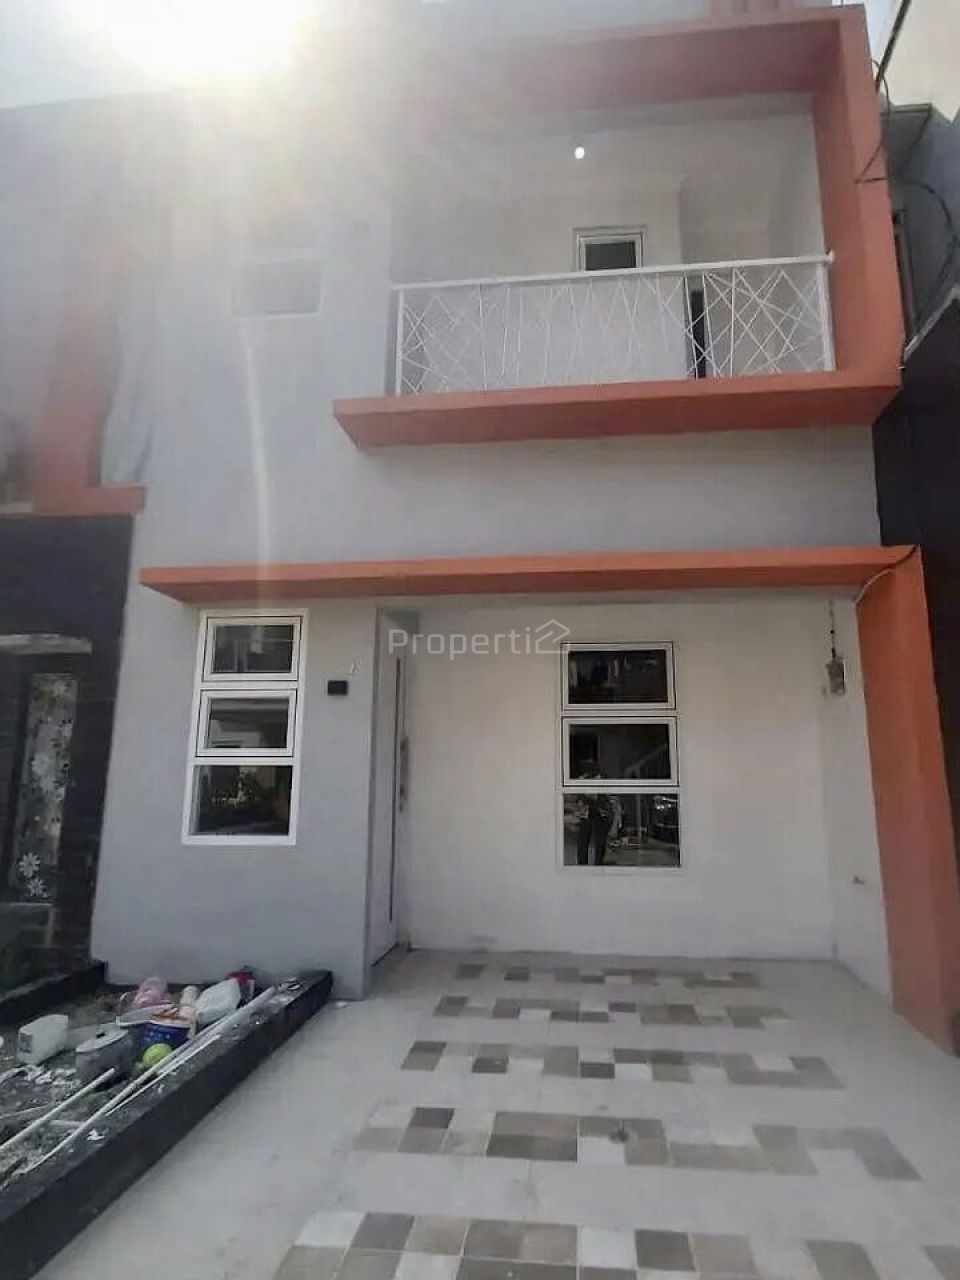 Rumah Brand New di Pamulang, Kota Tangerang Selatan, Banten